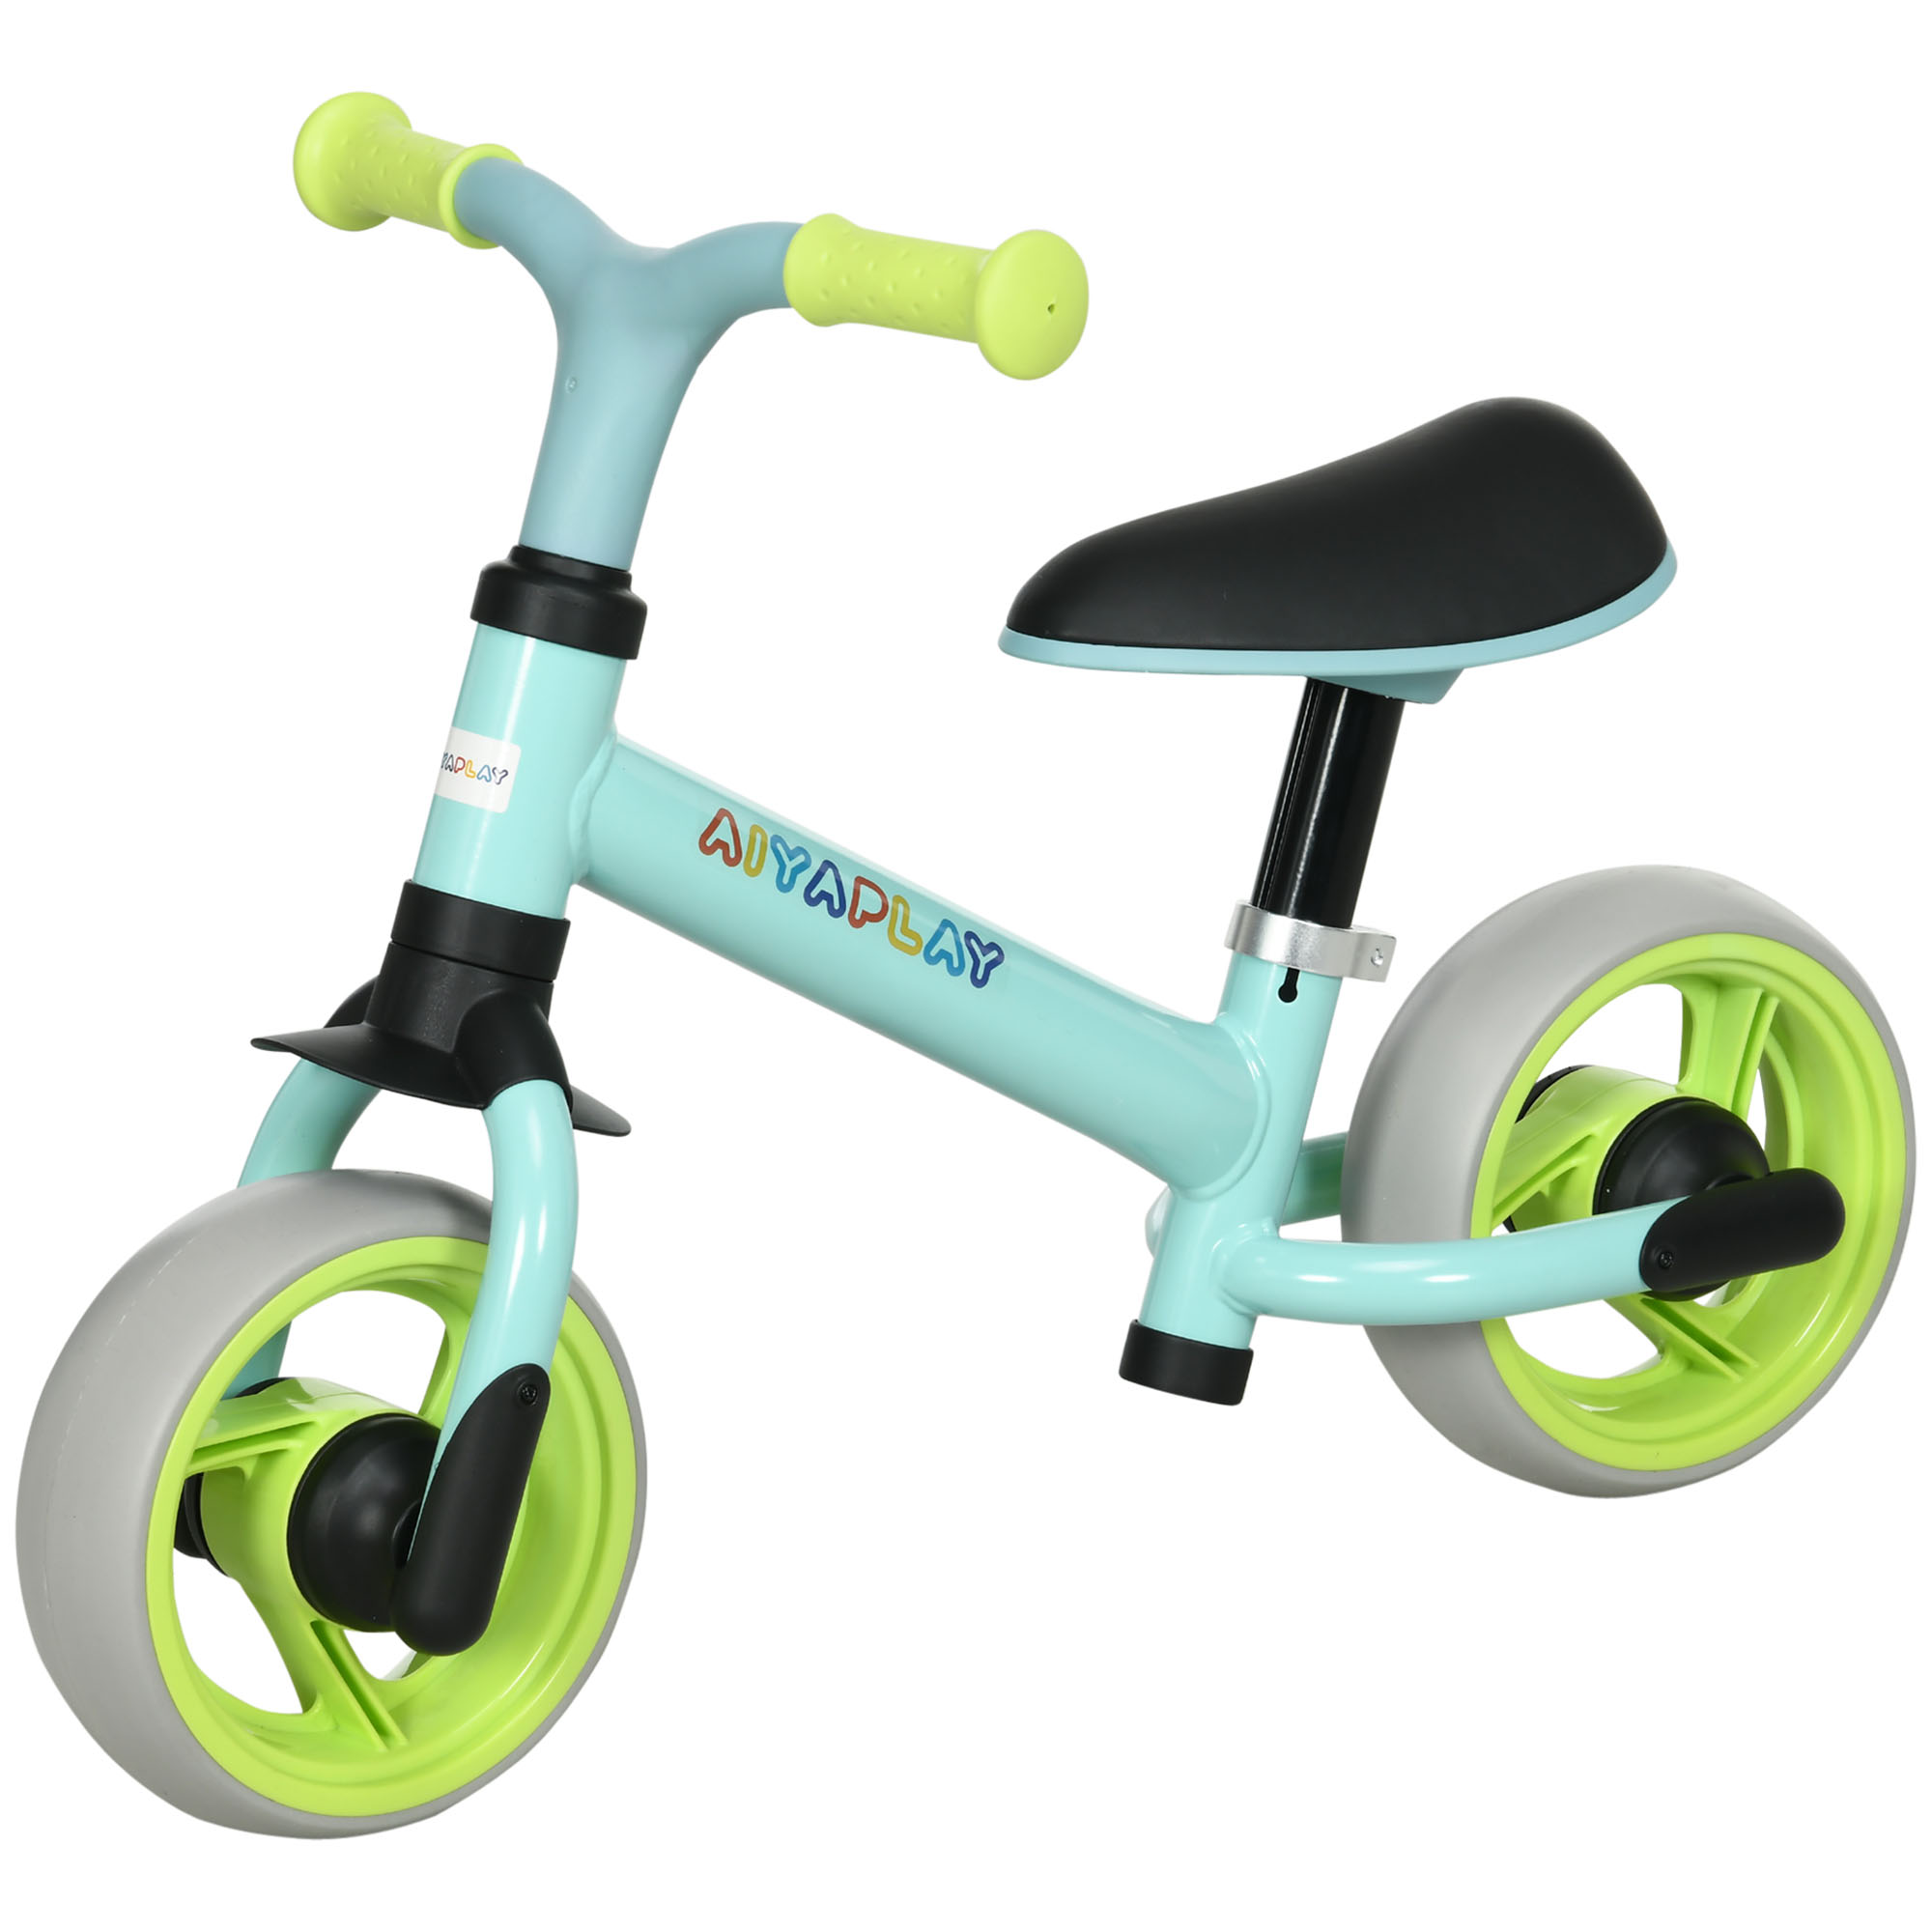 Ποδήλατο AIYAPLAY Balance για παιδιά έως 4 ετών με ρυθμιζόμενη σέλα